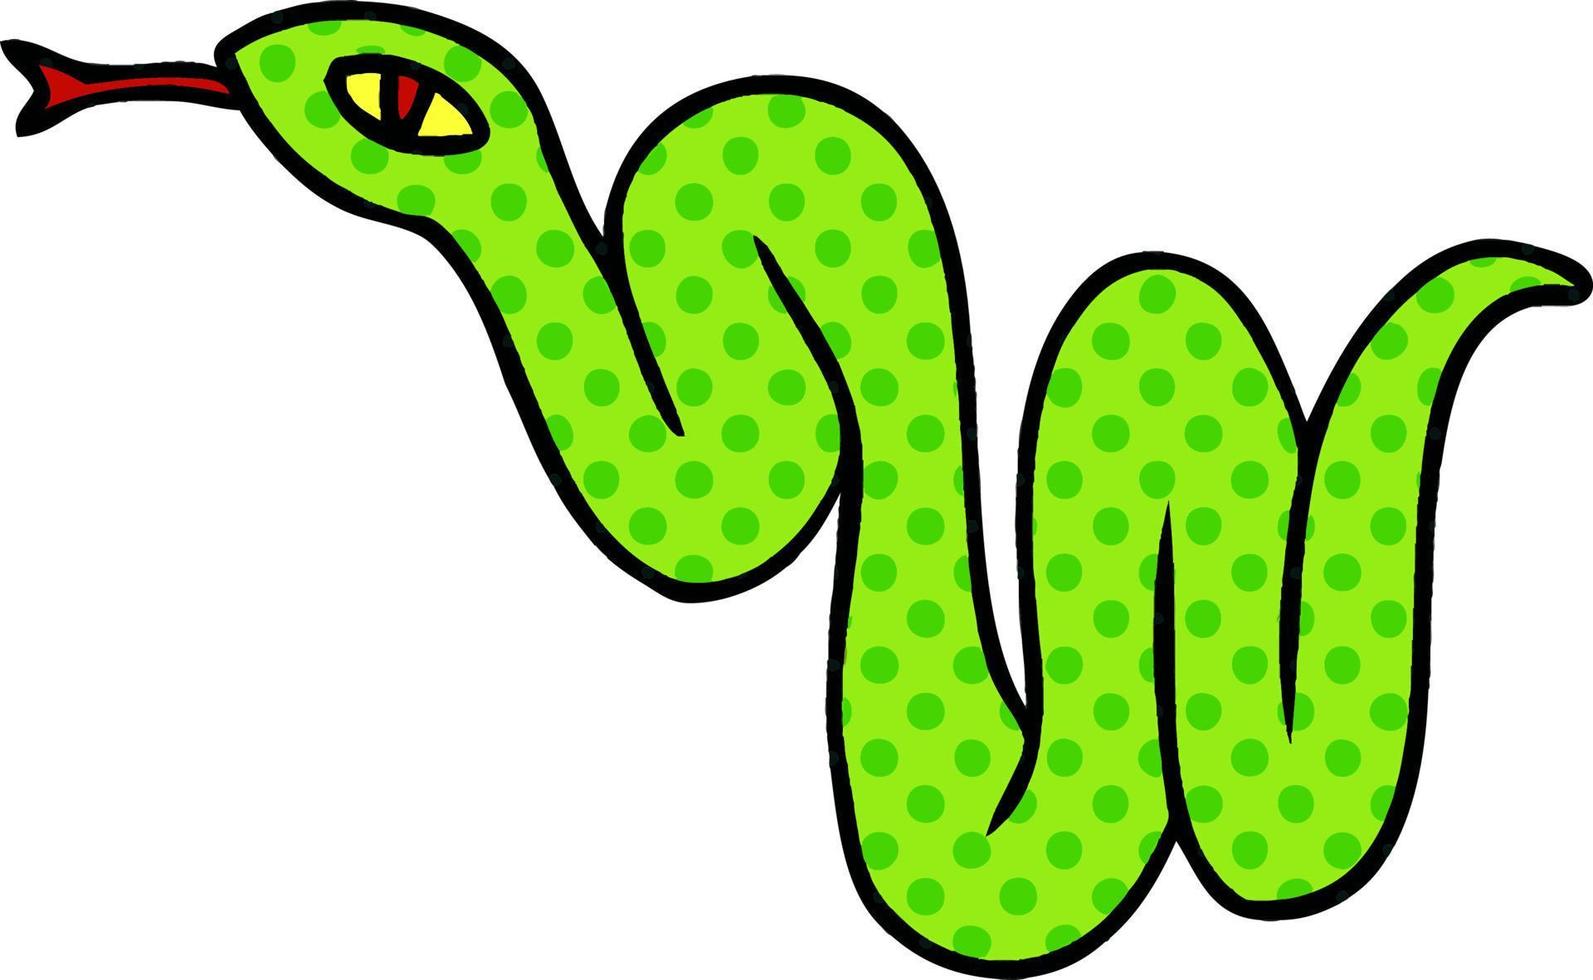 cartoon doodle of a garden snake vector